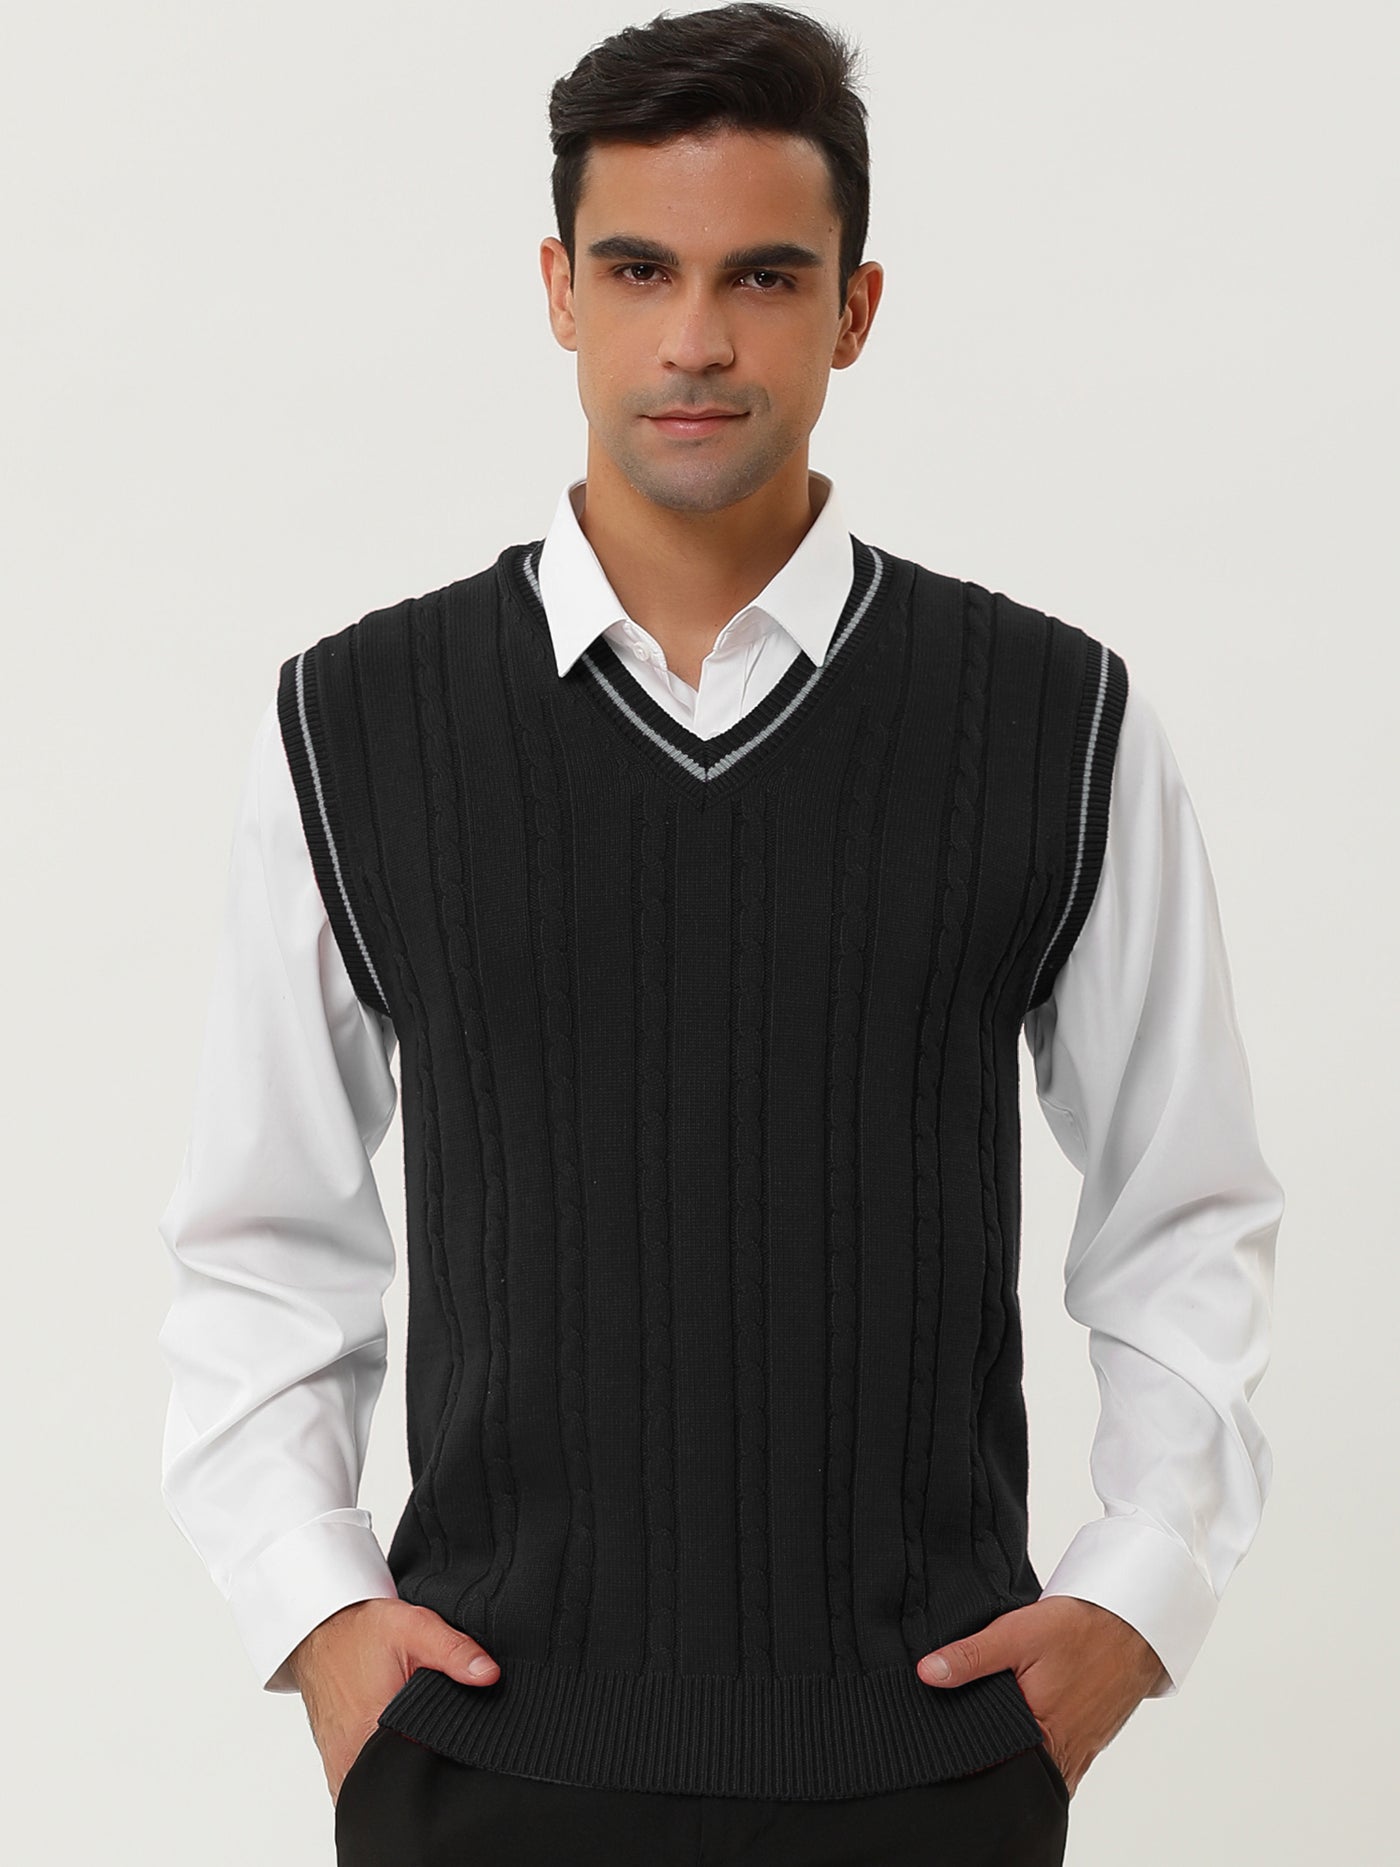 Bublédon Classic Knit Sleeveless V-Neck Pullover Sweater Vest